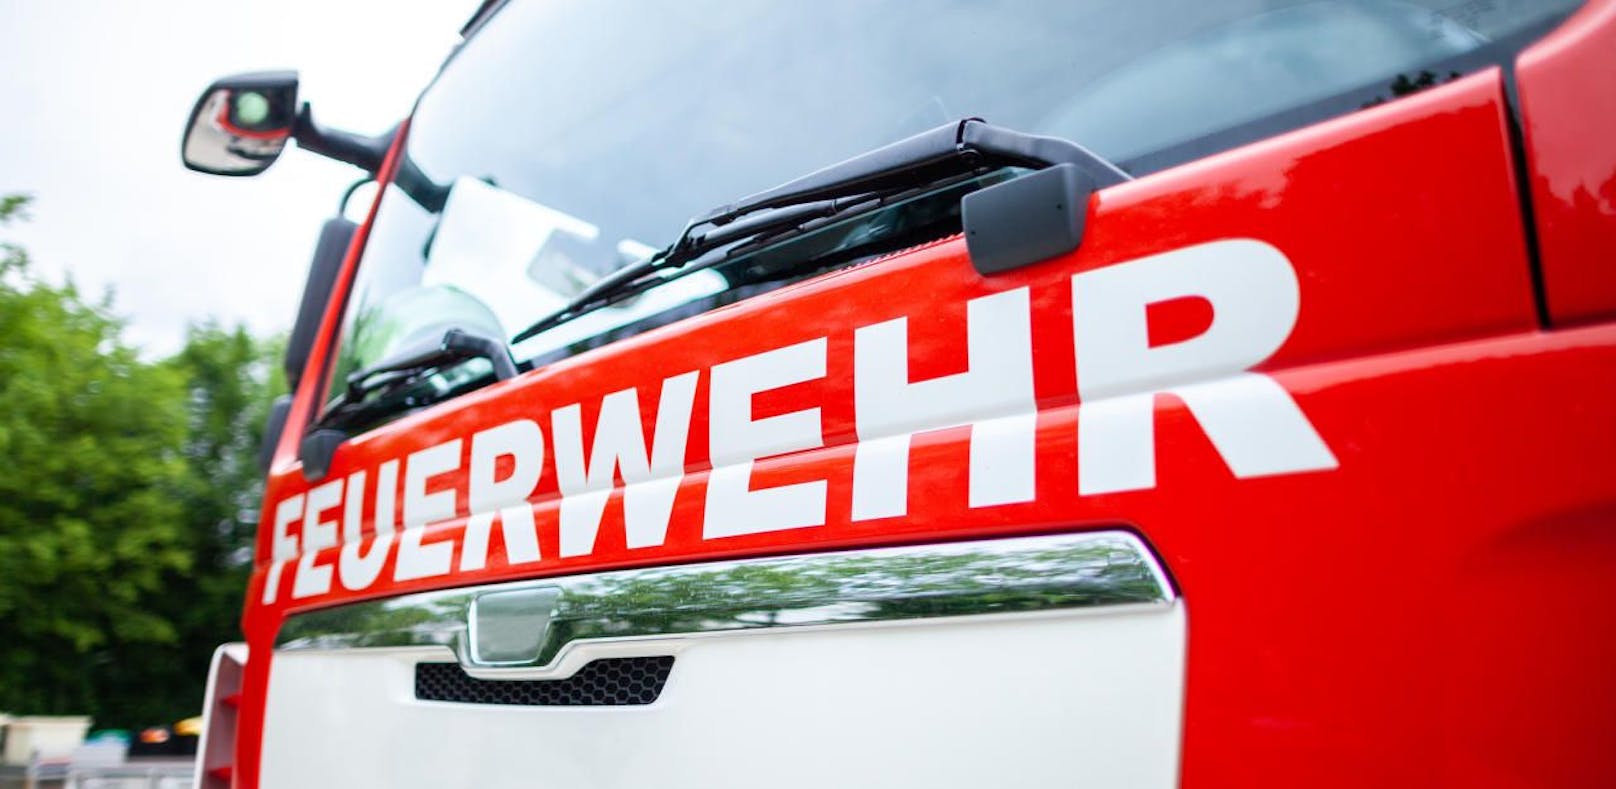 Ab 2020 will Steiermarks Feuerwehr auf ein digitales Alarmsystem umrüsten. Dafür sollen bis zu 25 Millionen Euro investiert werden. (Symbolfoto)